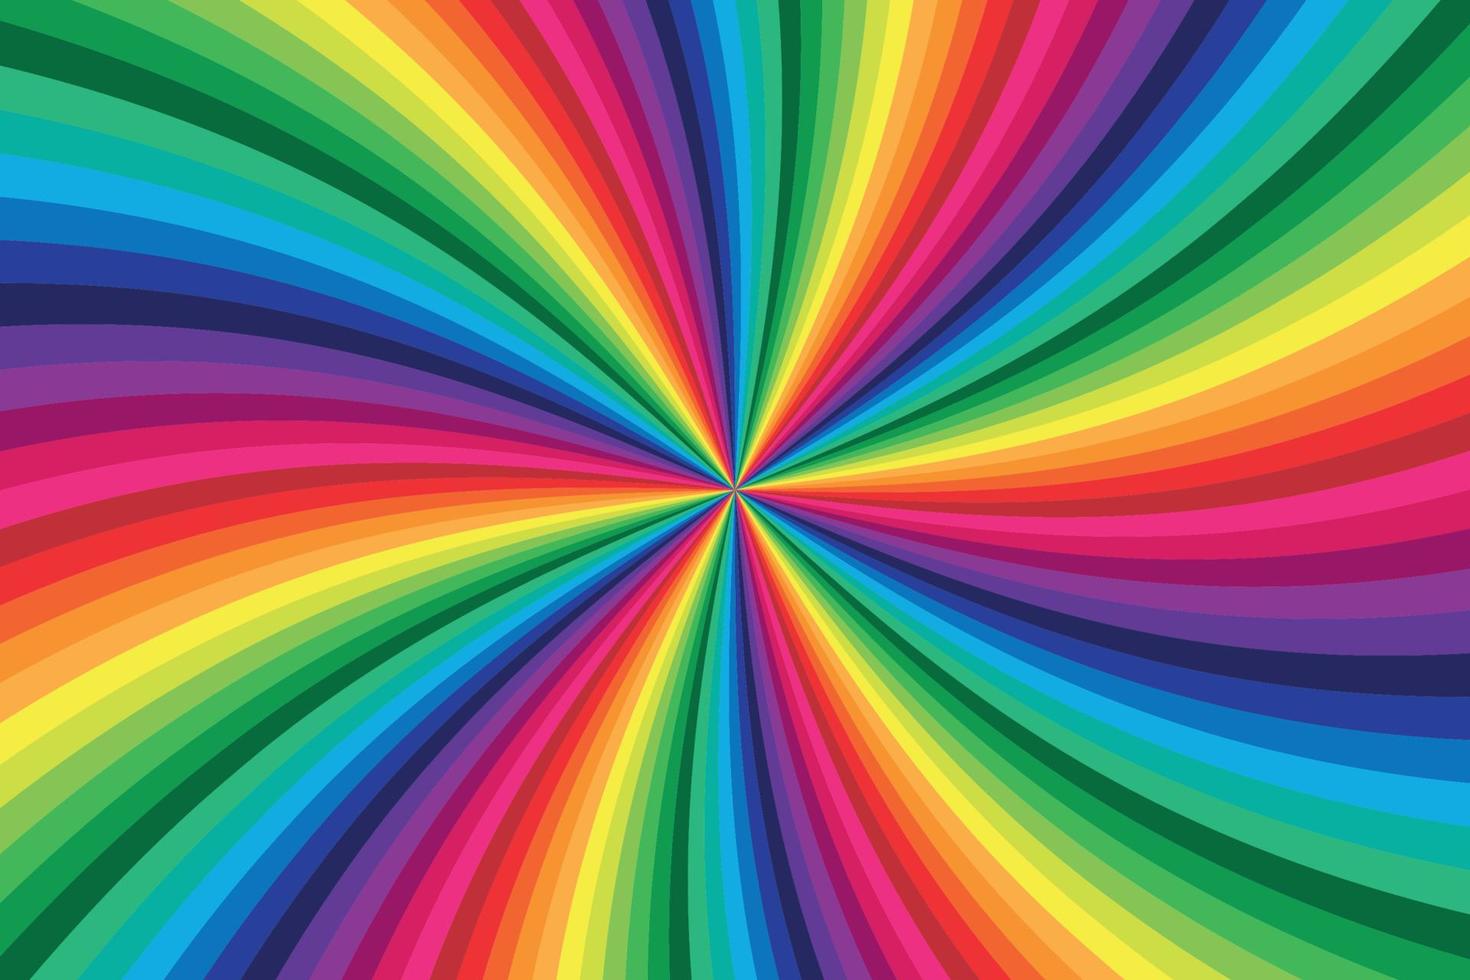 regenbogenfarbener Hintergrund vektor